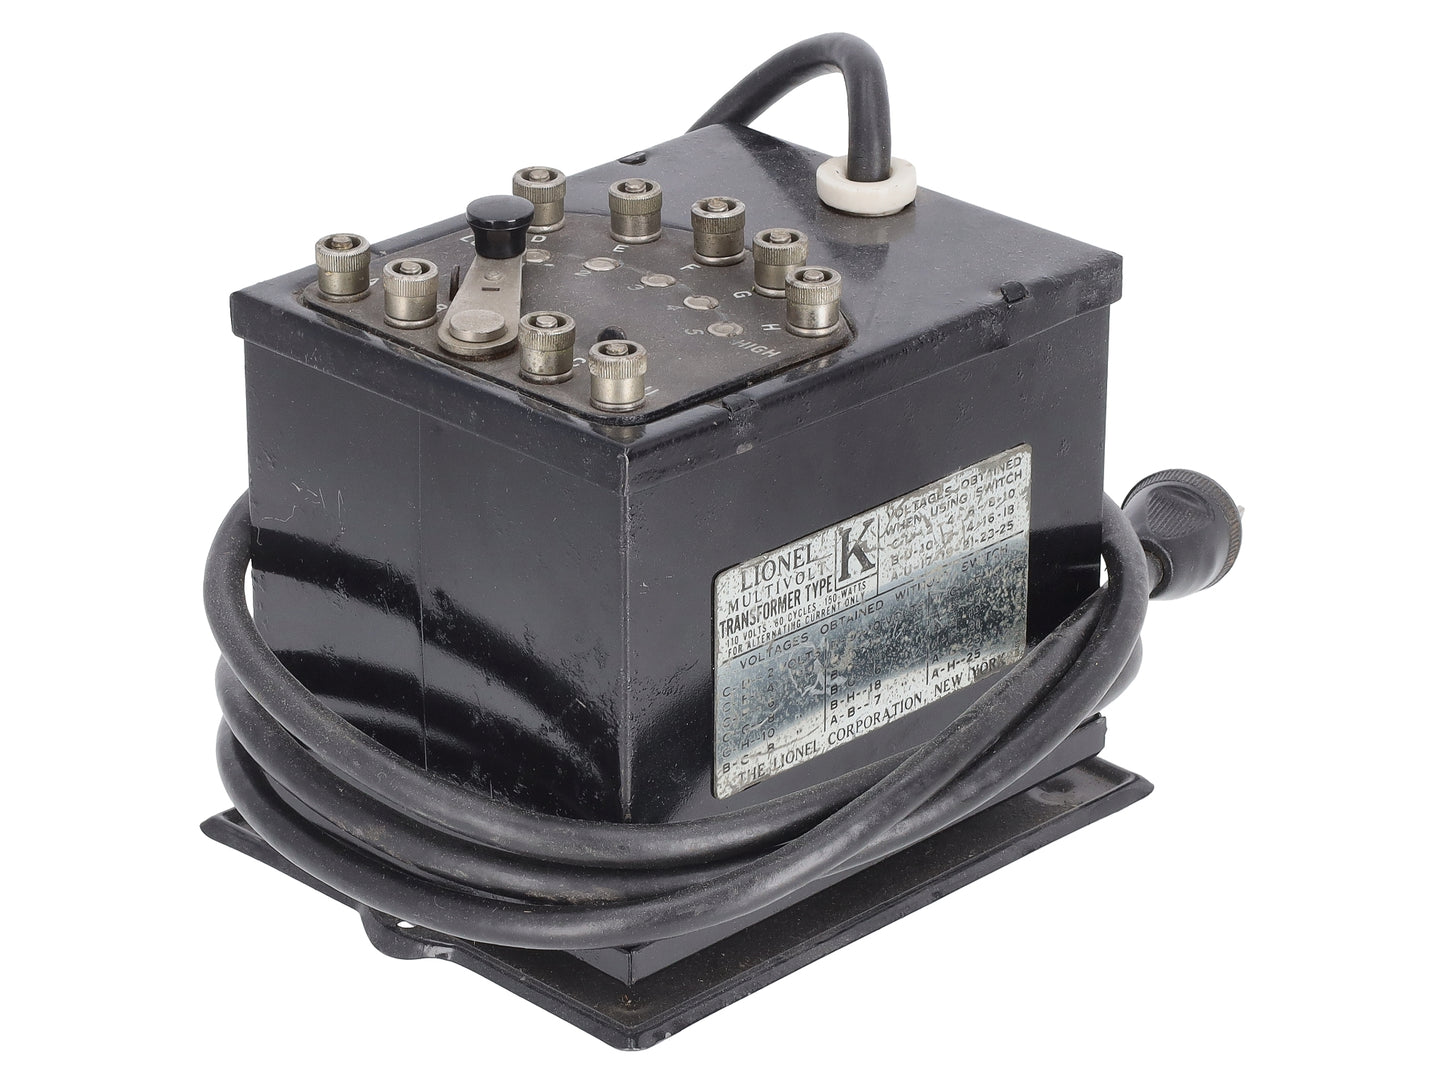 Lionel K Vintage O Prewar Multi-Volt 150 Watt Transformer VG